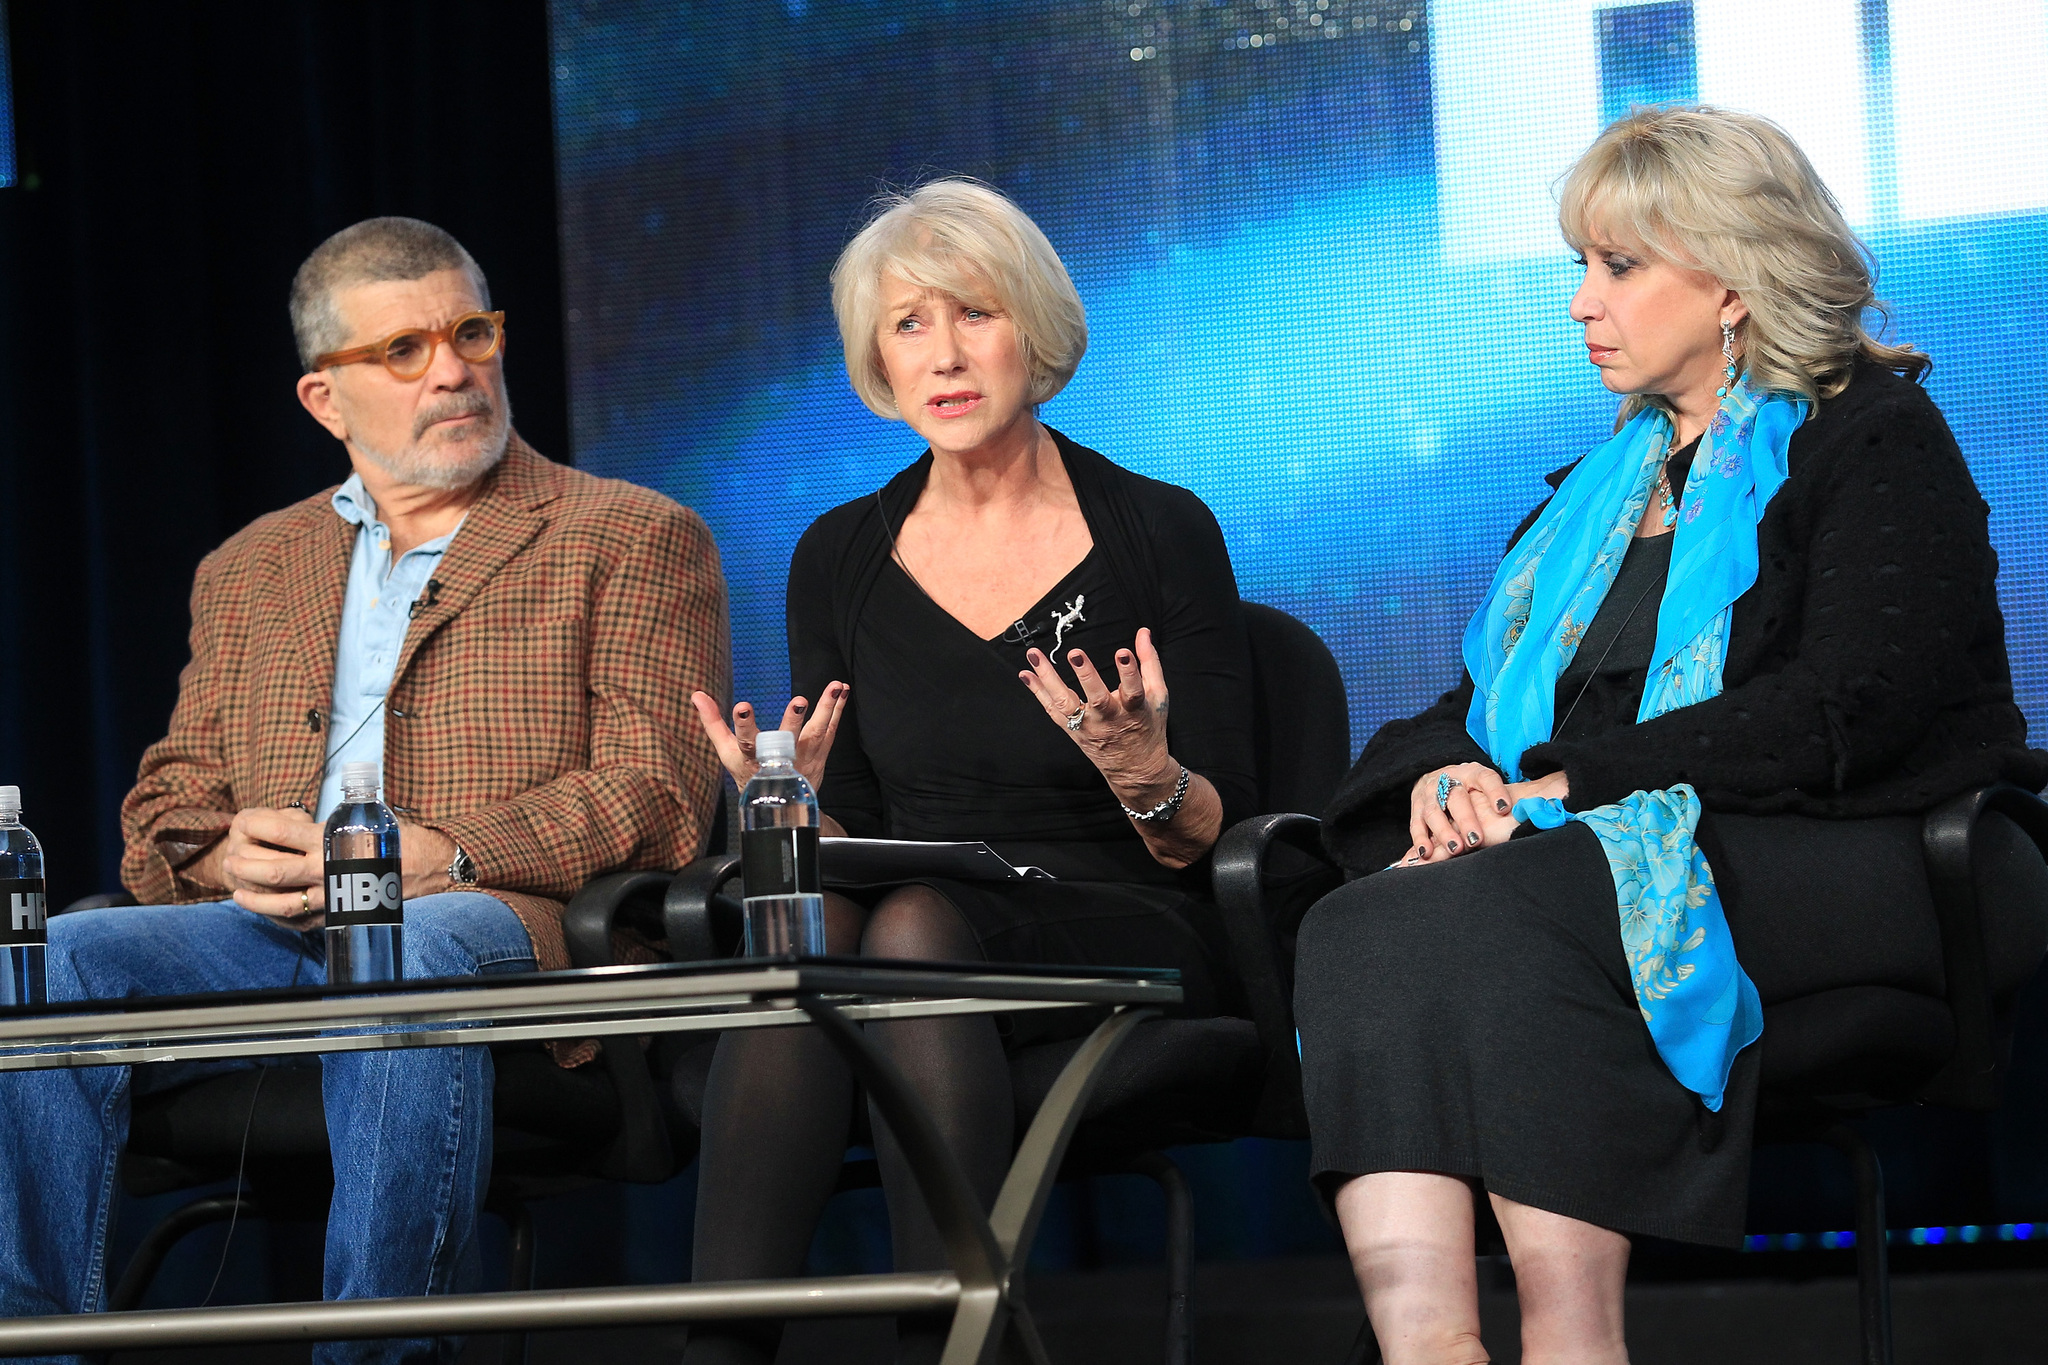 David Mamet, Helen Mirren and Linda Kenney at event of Phil Spector (2013)